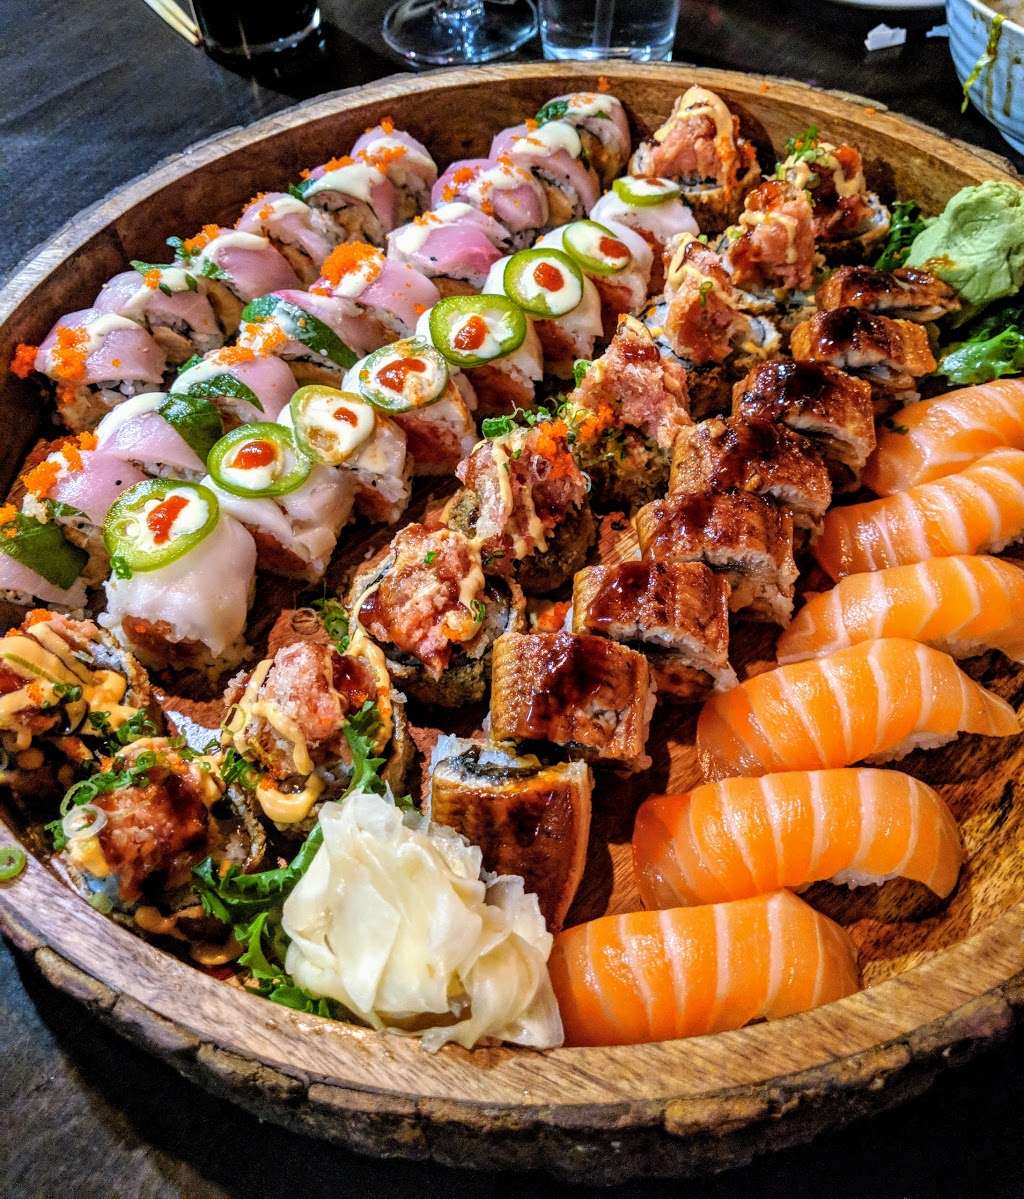 Fuku Japanese Sushi Burrito & Asian Kitchen | 2889 NJ-35, Hazlet, NJ 07730 | Phone: (732) 888-7768